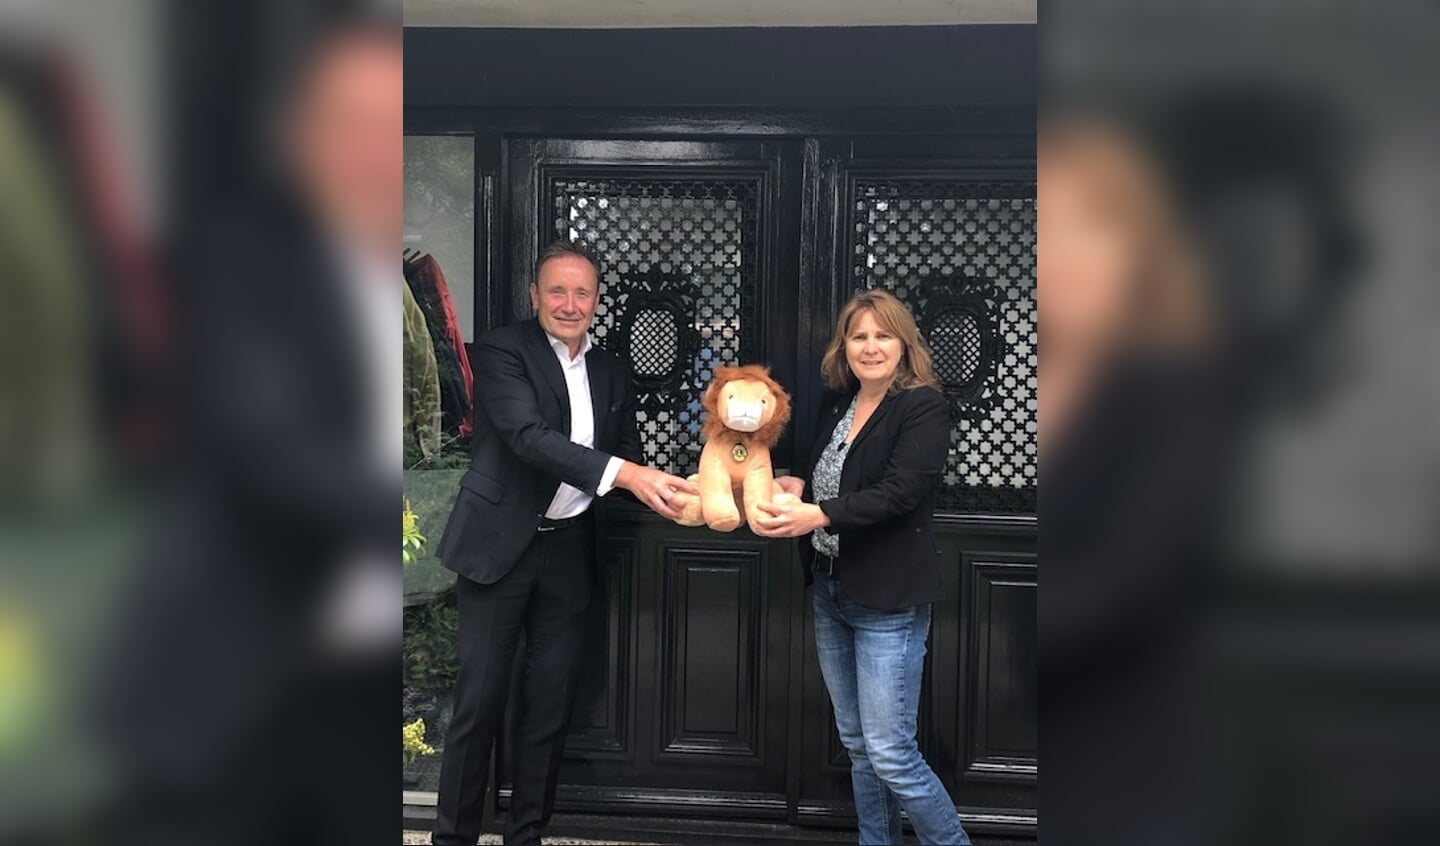 Wim Bens overrhangt de Lion aan Burgemeester Marieke Moorman